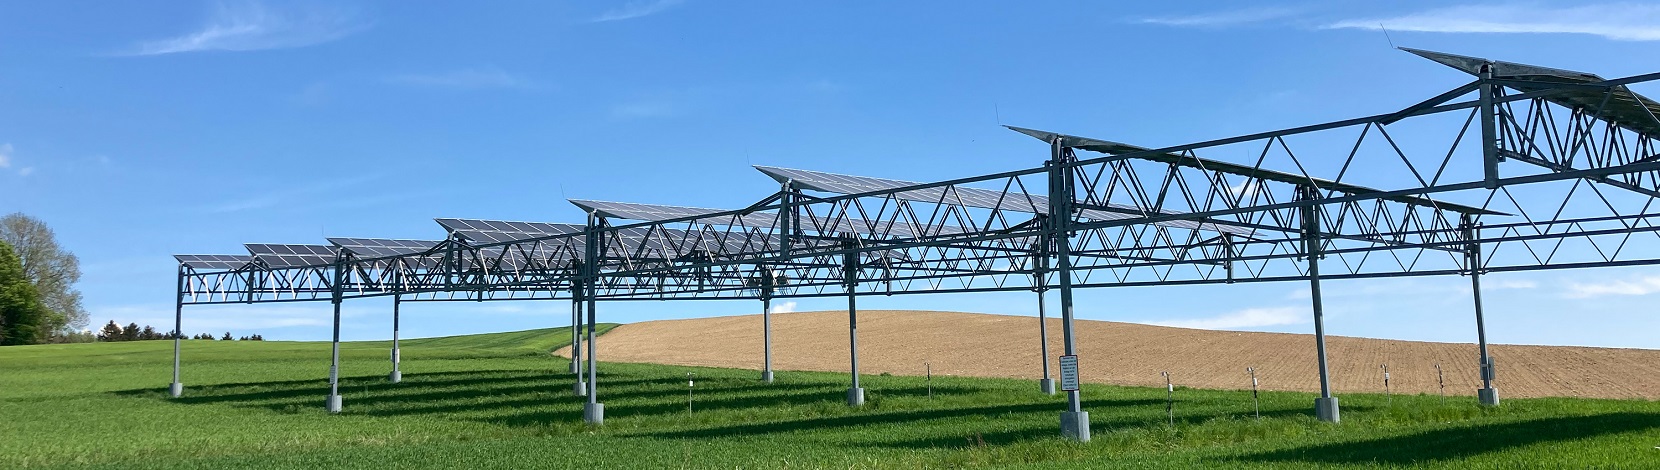 Agri-PV-Anlagen schützen Pflanzen vor Dürre – Electrosuisse